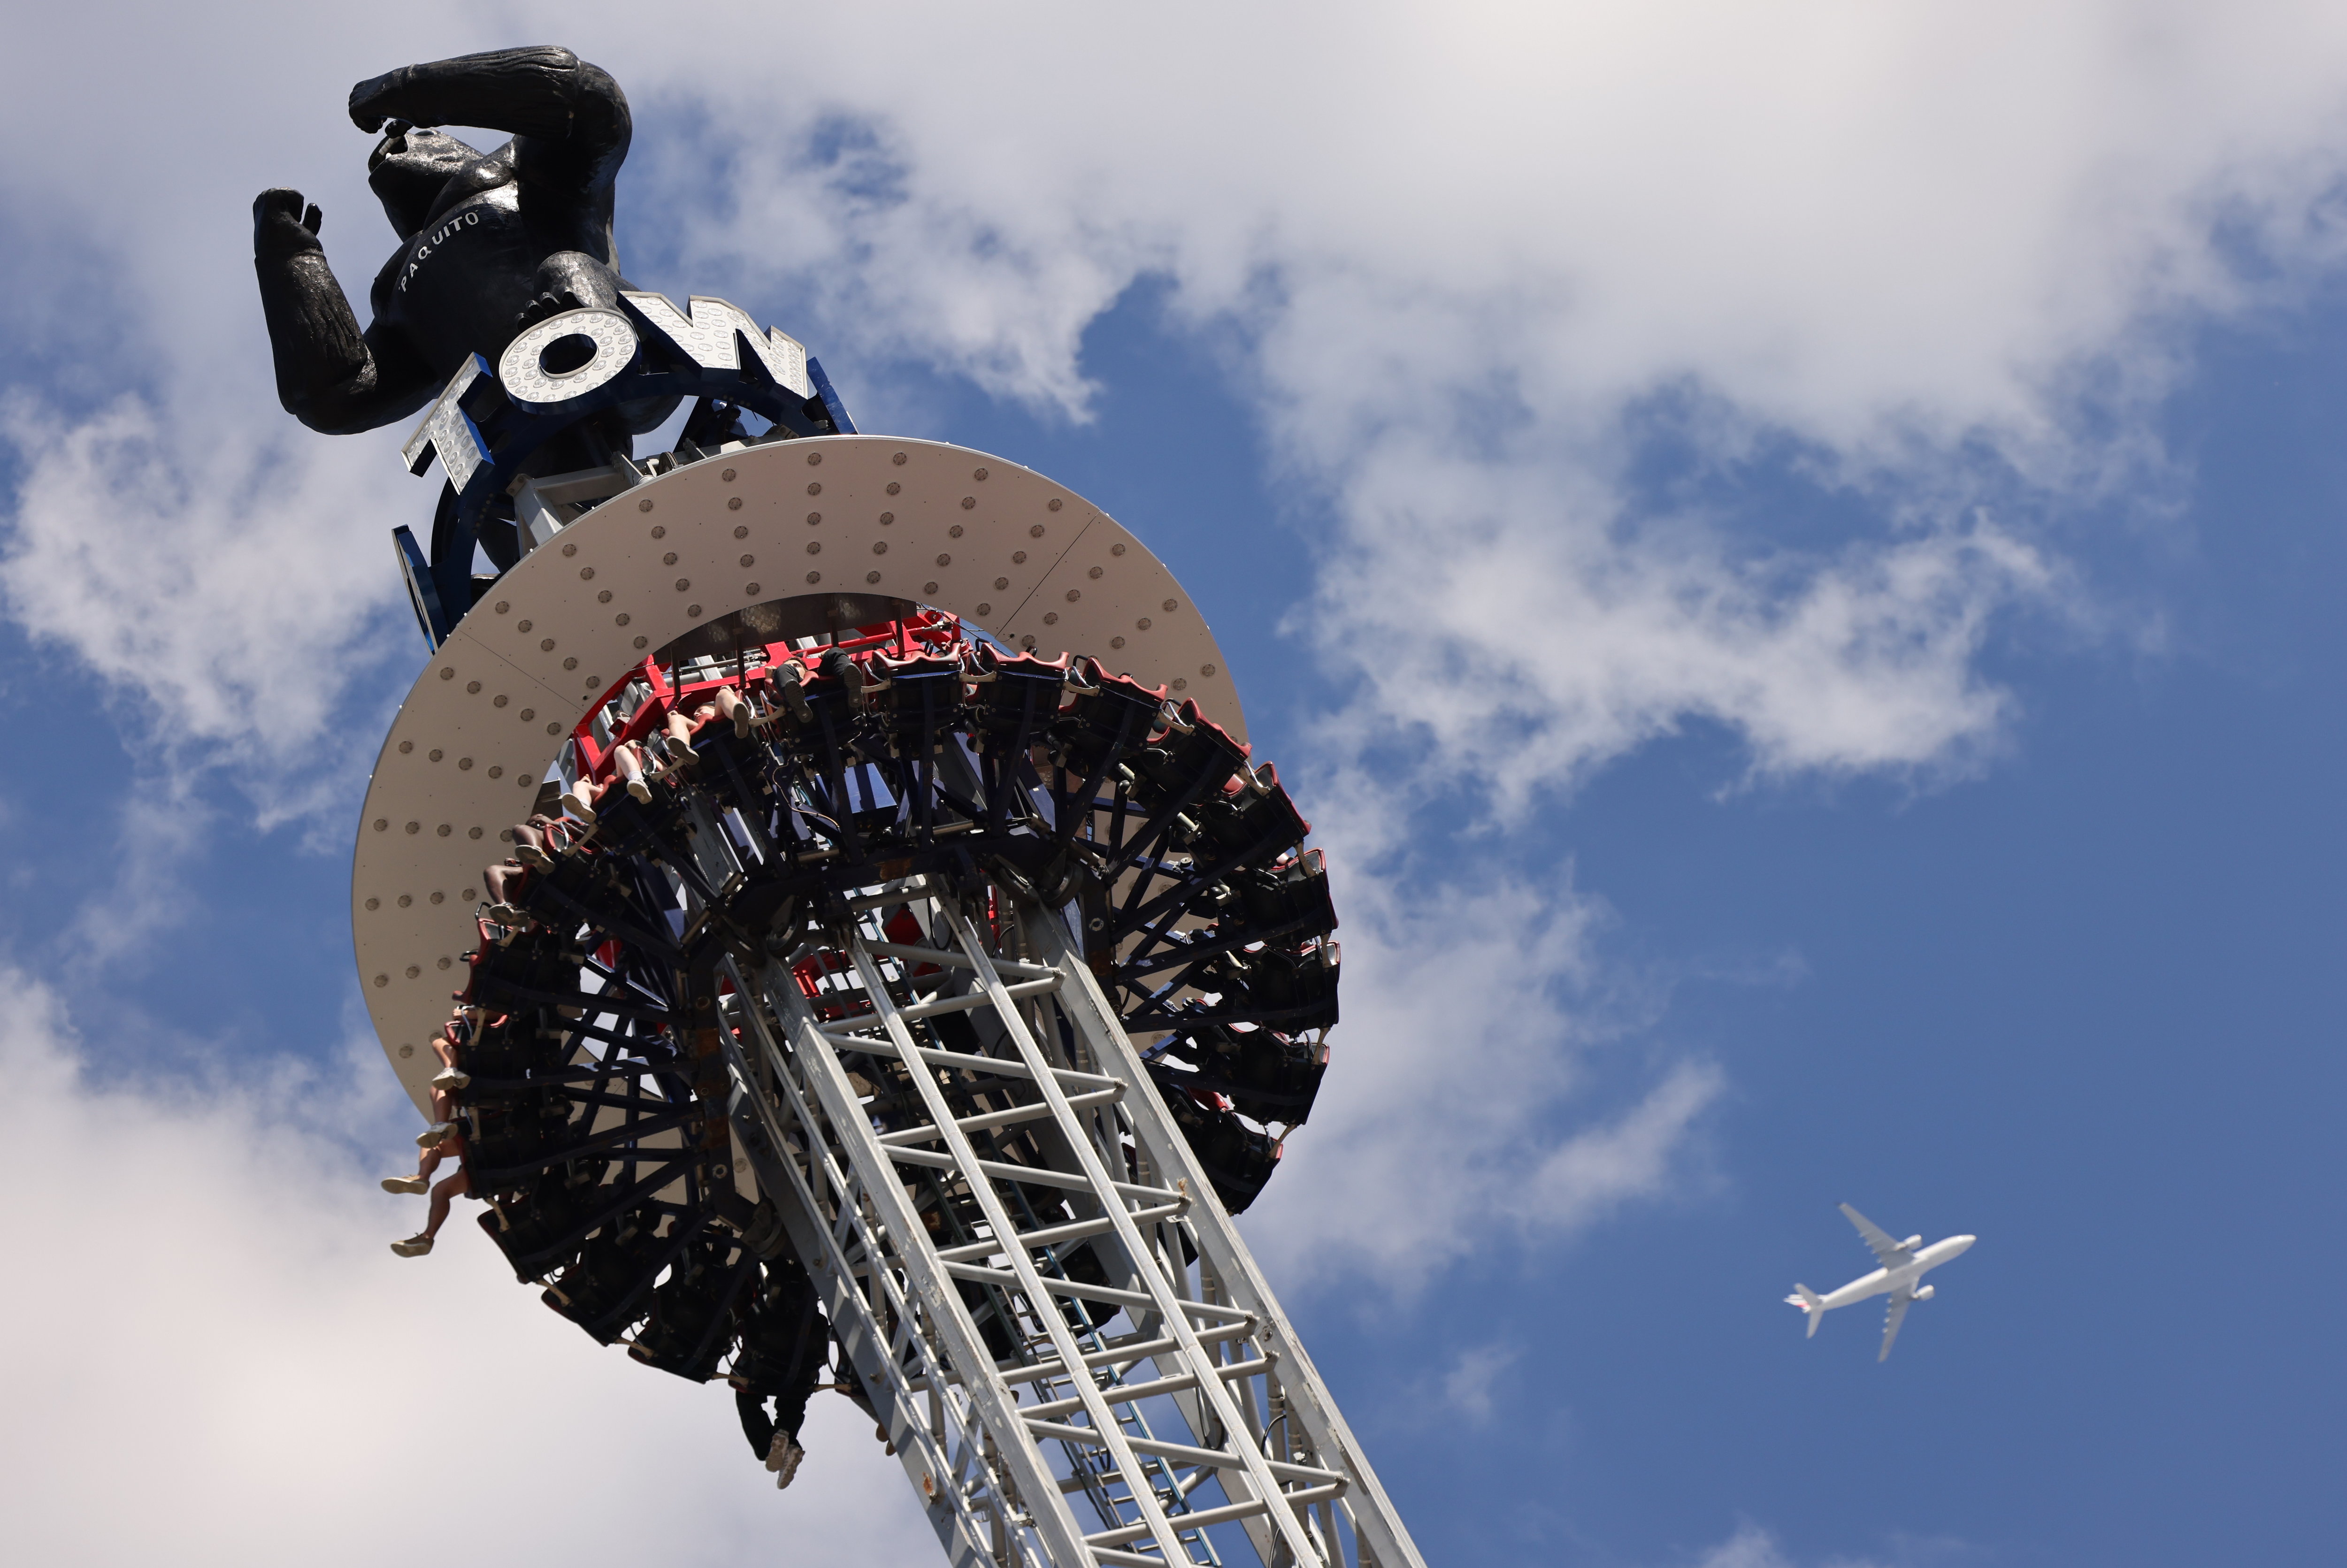 Saint-Germain-en-Laye. Les amateurs de sensations fortes pourront simuler une chute libre sur la « Mega King Tower ». LP/Arnaud Journois